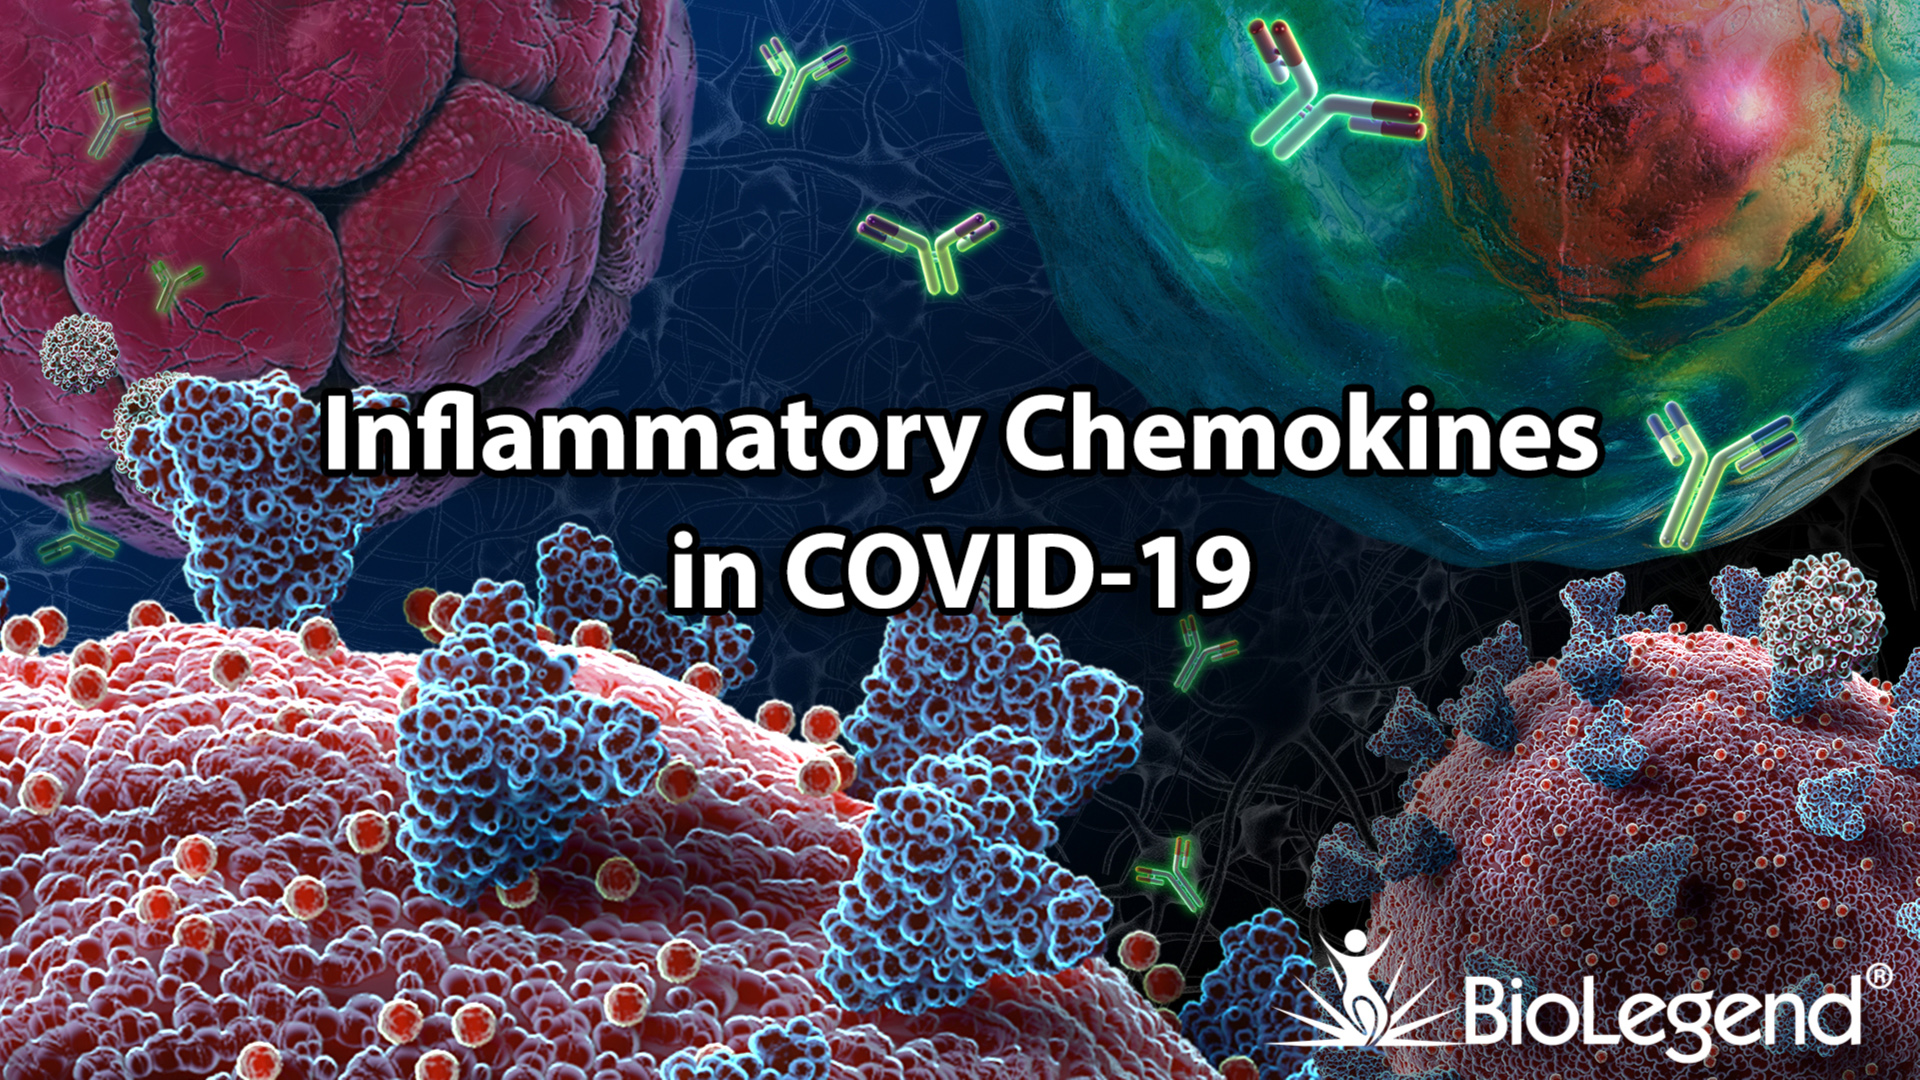  Inflammatory Chemokines in COVID-19